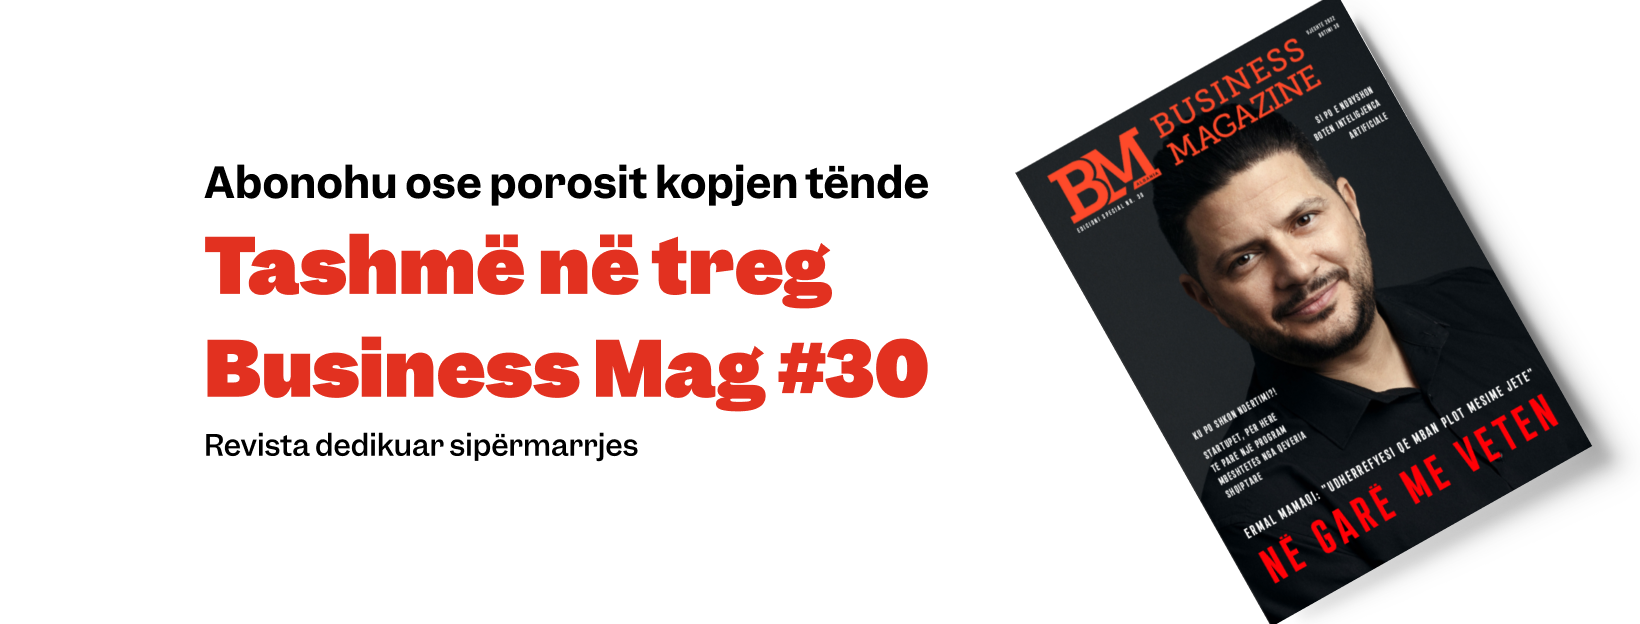 revista 30 e Businessmag